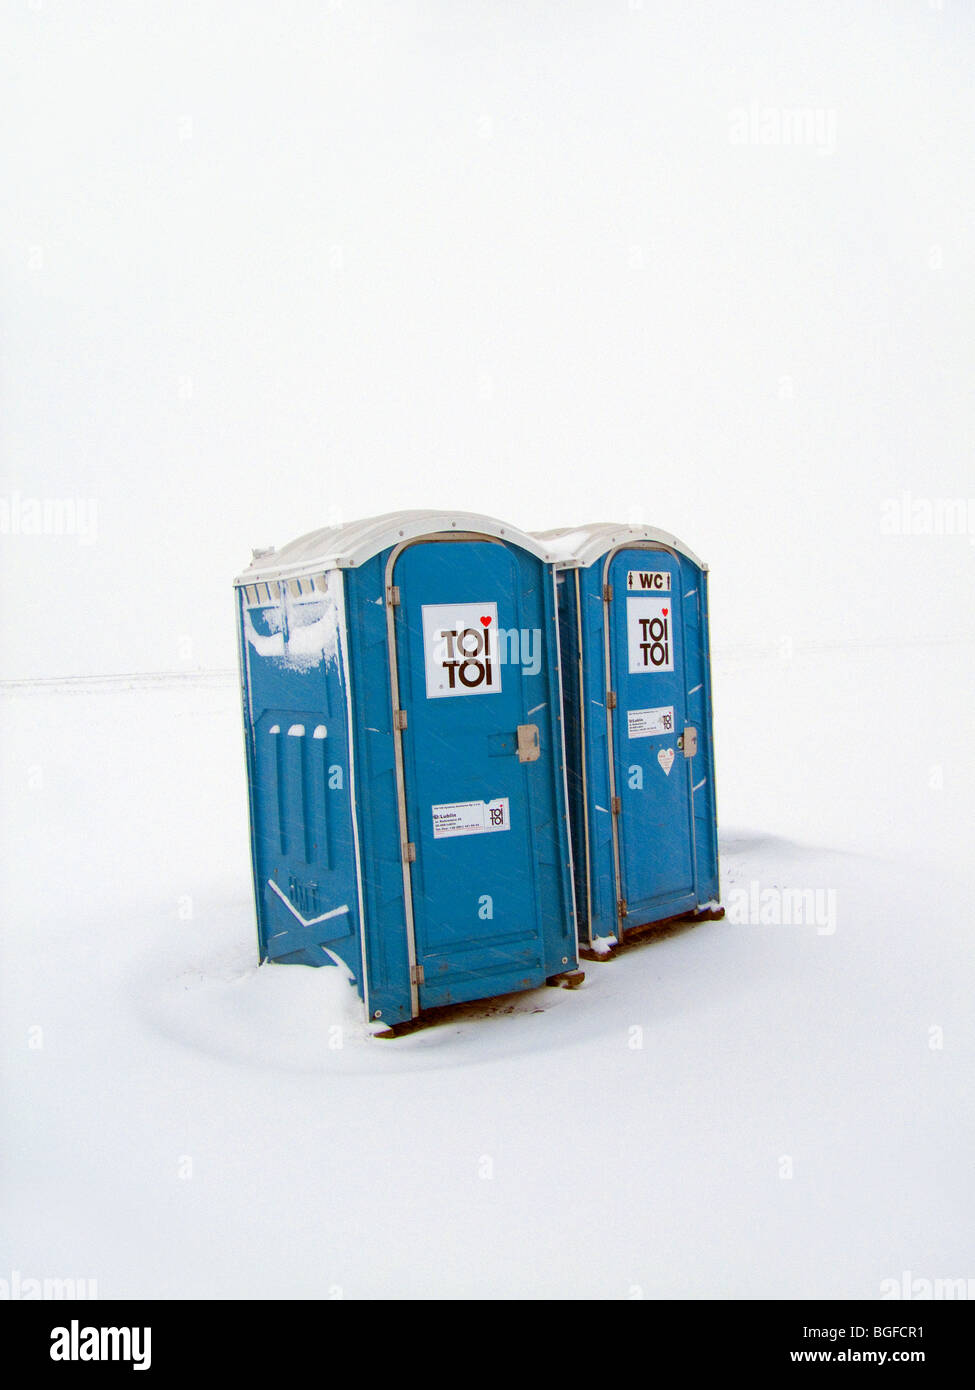 Toi Toi toilet WC in winter snow extreme weather Stock Photo